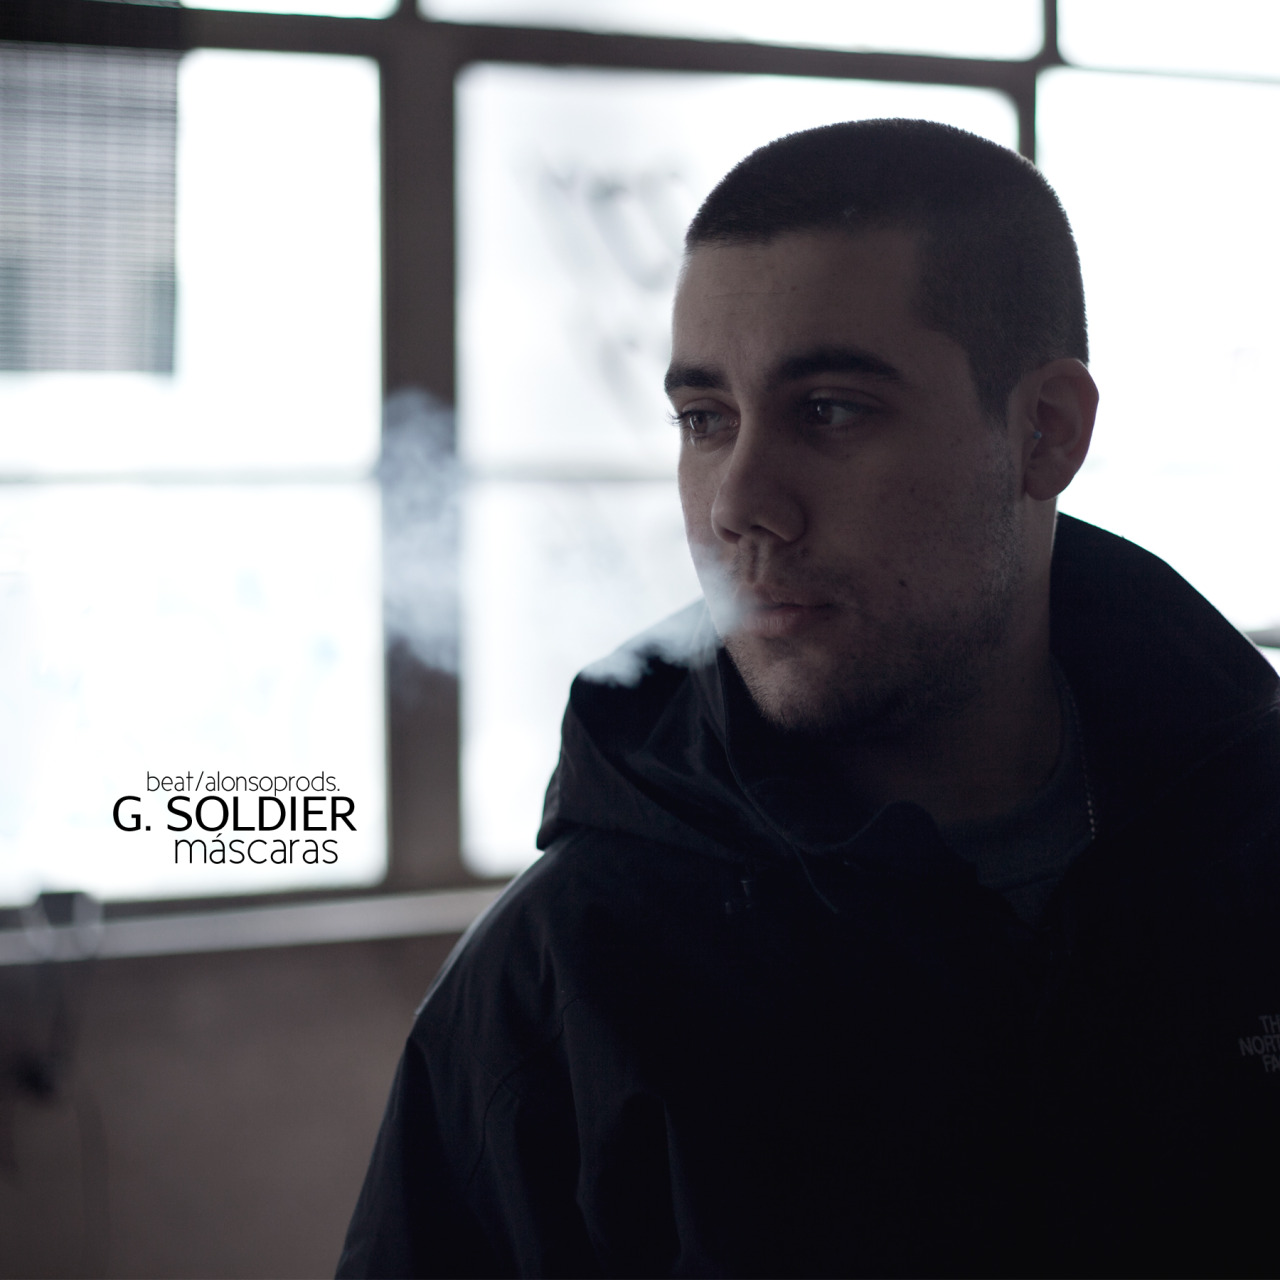 G. Soldier - Máscaras / beat. Alonsoprods.
Grabado y mezclado en Rara Avis. 
Arte y fotografía por causa803
http://www.youtube.com/watch?v=wxWgxCSnJO4